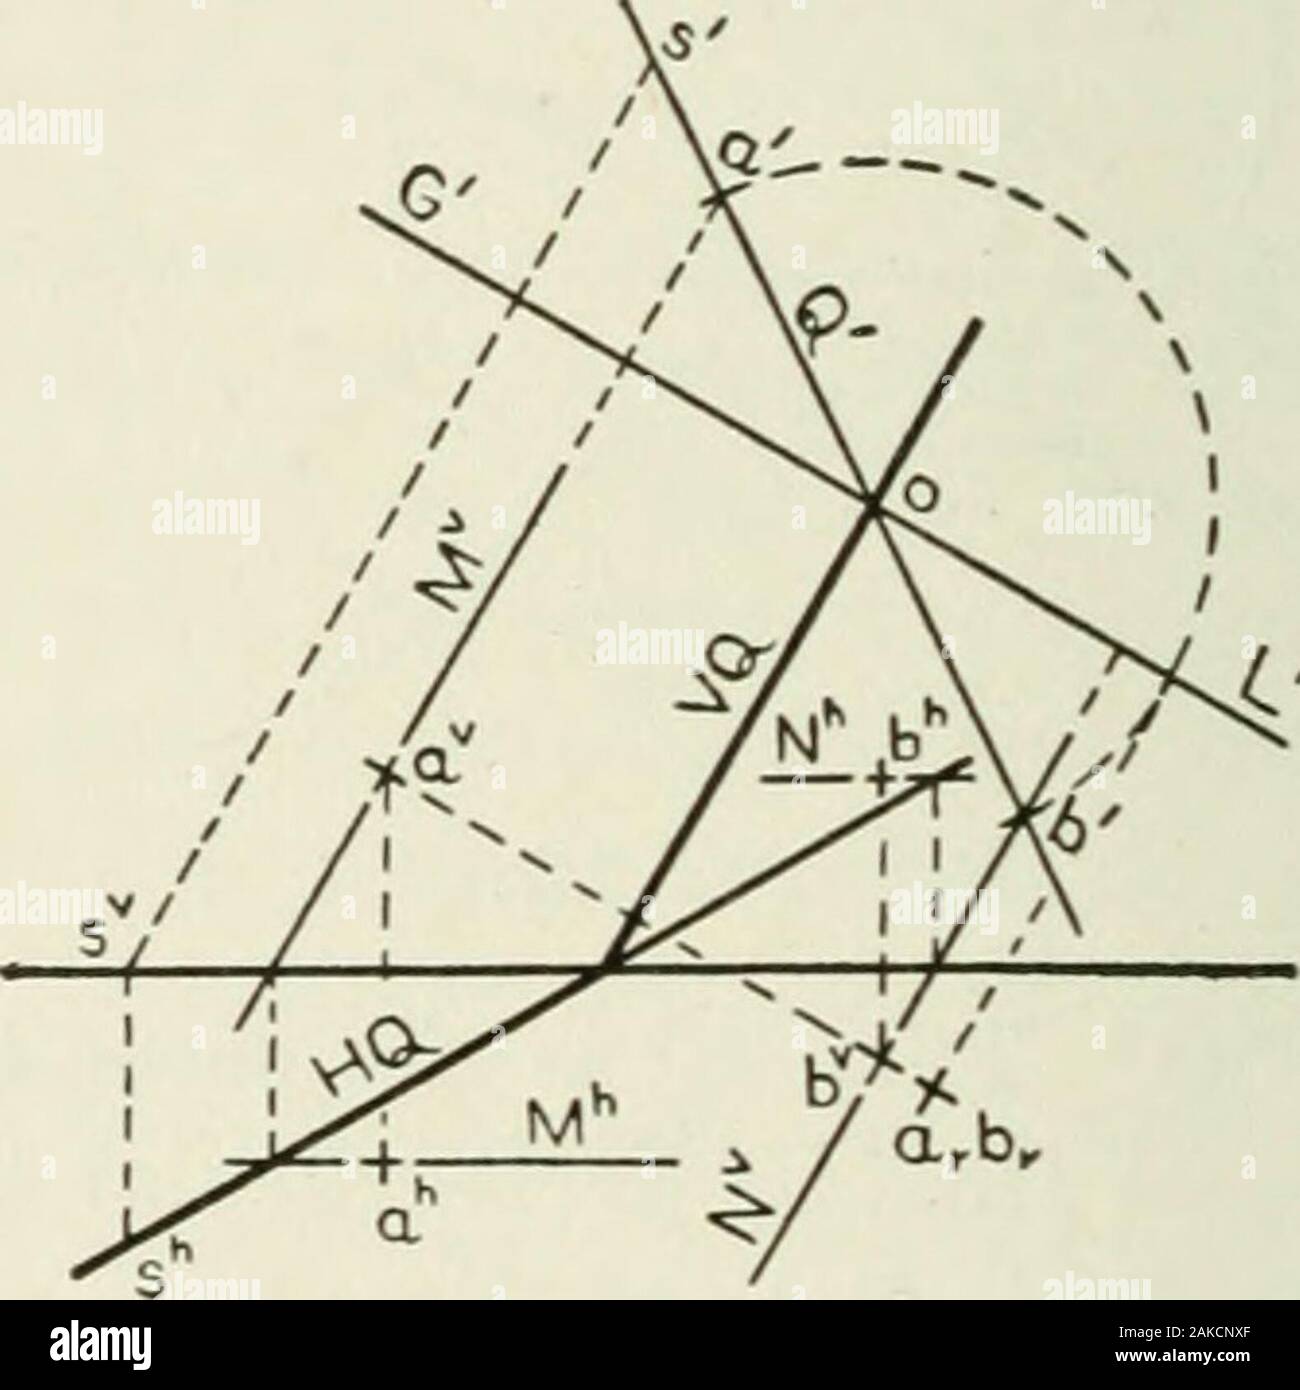 Darstellende Geometrie. Beteiligt Position zu drehen GXLU abouto zu bxv, die in V{Q liegt unter GXLX produziert. Dann pro-ceed wie für den Punkt a. Nach wie vor gibt es eine Wange auf theconstruction; der Abstand von b zu GL ist gleich den abstandvon bx und GXLX. 166 darstellende Geometrie [XVII, § 147 zu beachten. Der Student nicht immer leicht zu sehen, warum die F-projectionsav und bv sollte durch Hilfslinien in der Ebene Q entfernt werden, da die Abstände der Punkte von GL auf einmal in der Sekunde - ary Projektion angezeigt. In der Tat, die Projektionen av und bv kann durch Trans befindet - Ferring vom Secon Stockfoto